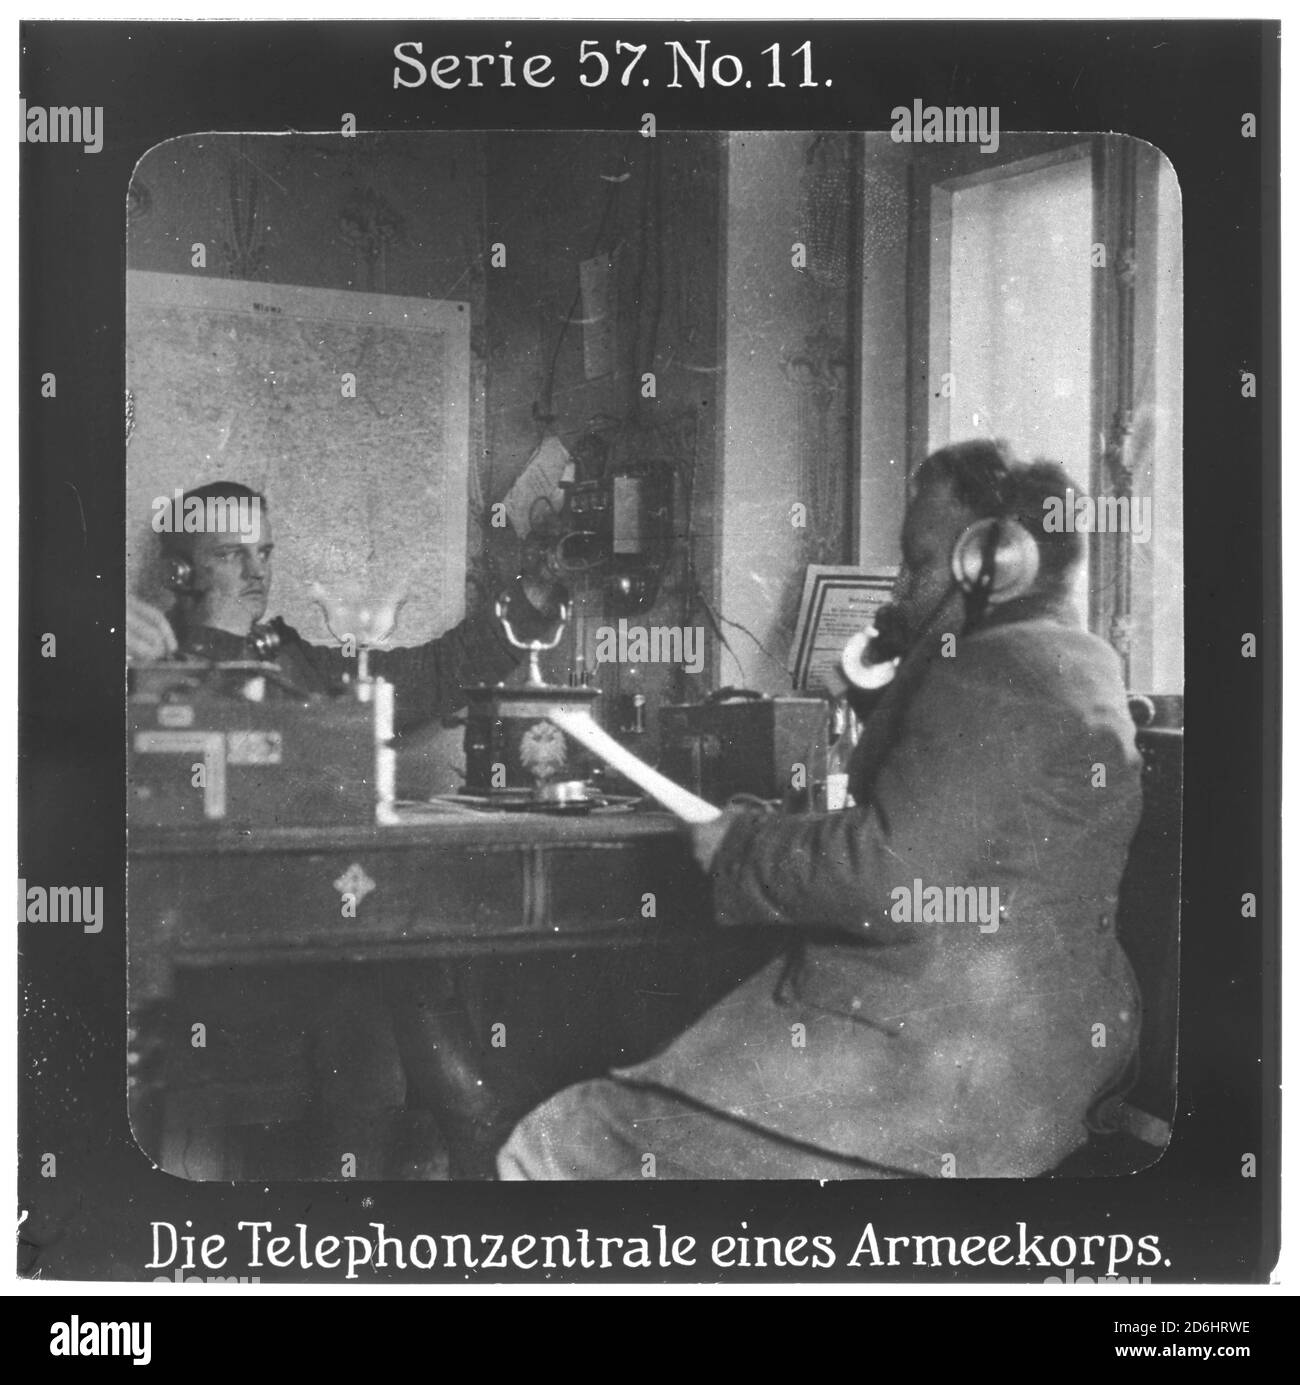 Projektion für alle - die Erobung Serbien. Serie 57. Nr. 11. Die Telephonzentrale eines Armeekorps. Nach dem Scheitern des Serbienfeldzugs der k.u.k. Armee im Jahr 1914 wurde im Oktober 1915 mit massiver deutscher Unterstützung ein neuer Feldzug durchgeführt. Die Firma „Projection für alle“ wurde 1905 von Max Skladanowsky (1861-1939) gegründet. Sie producated bis 1928 fast 100 Serien zu je 24 Glasdias im Format 8,3 x 8,3 cm im sog. Bromsilber-Gelatin-Trockenplatten Verfahren. Die Serien umfasster Städte, Länder, Landschaften, Märchen und Sagen, das Alte Testament u. den 1. Weltkrieg. Stockfoto